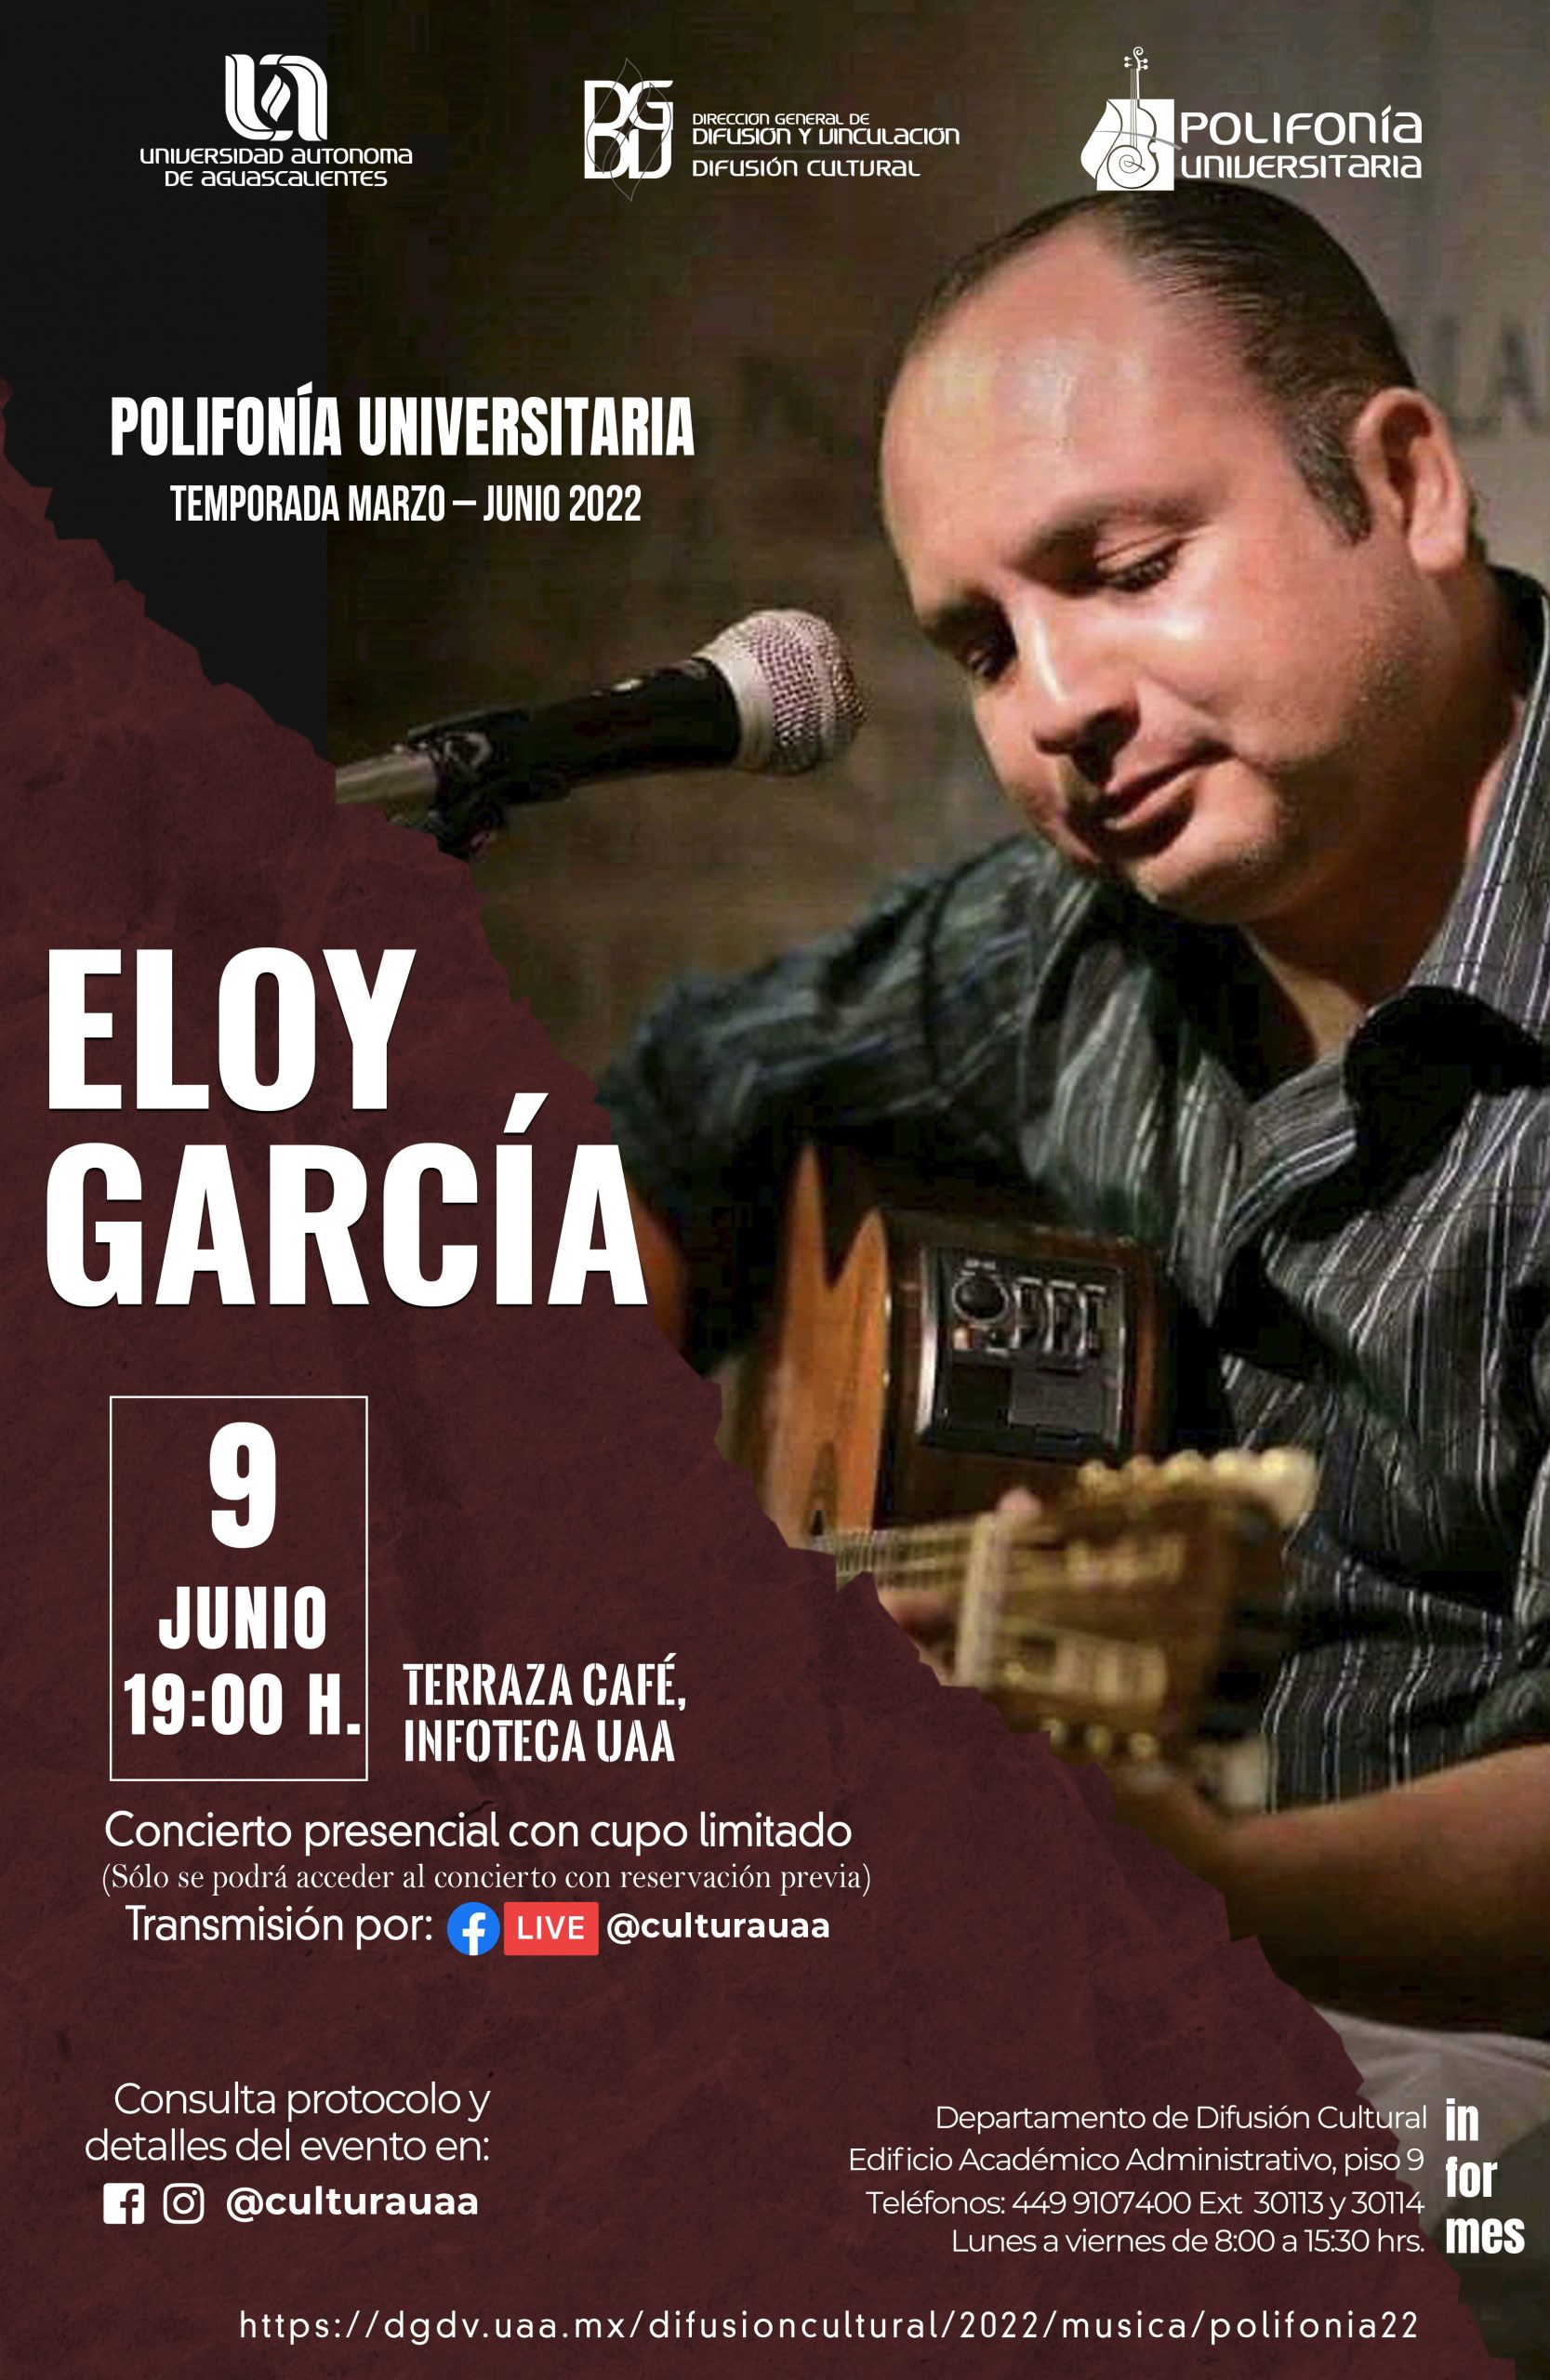 Polifonía Universitaria – Eloy García